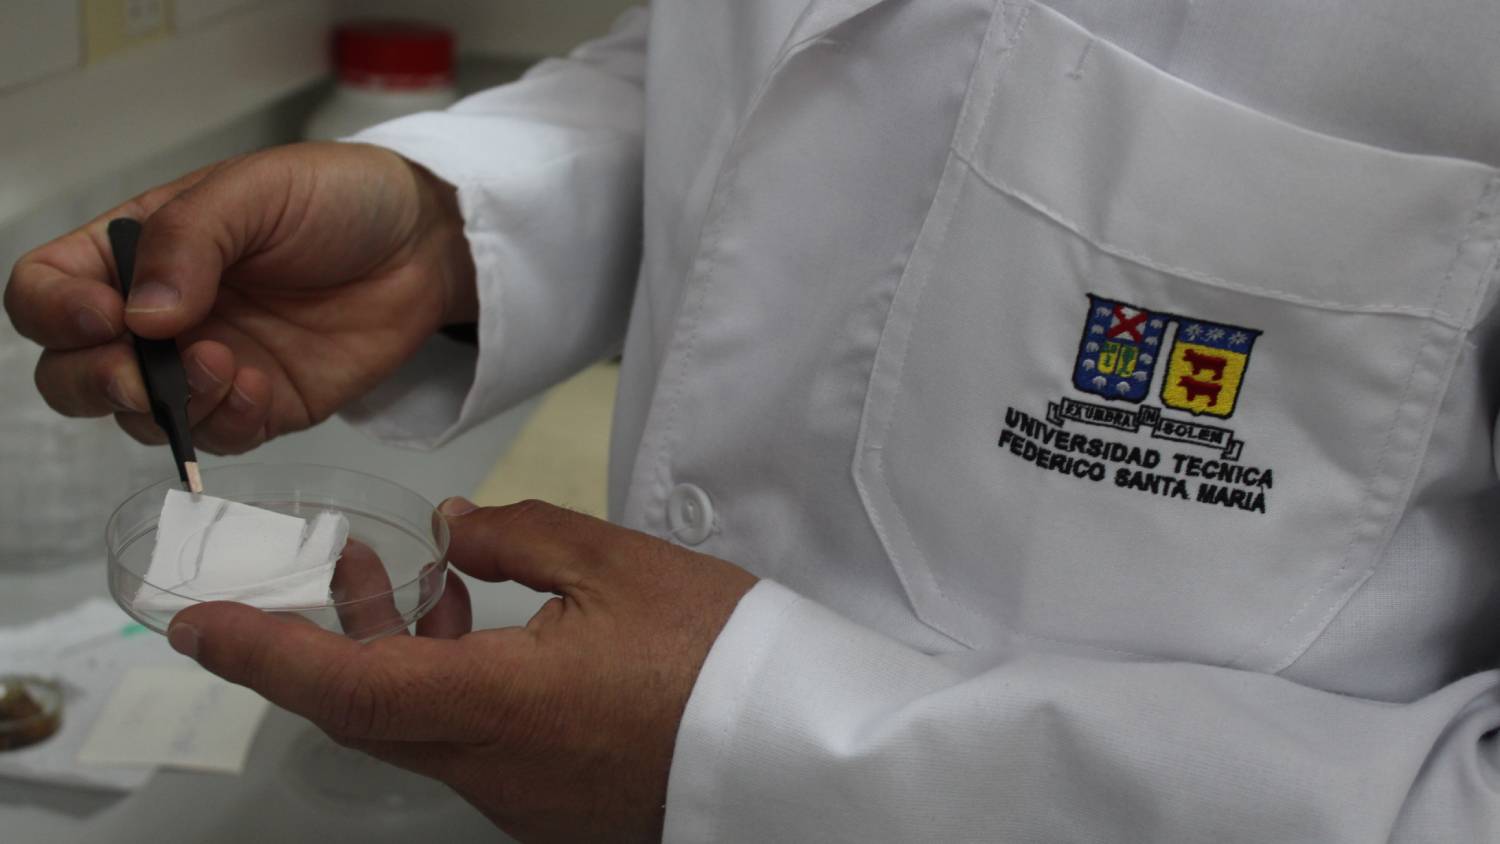 Liderando en medicina regenerativa: Chilenos trabajan en implantes de piel con polímeros de salmón